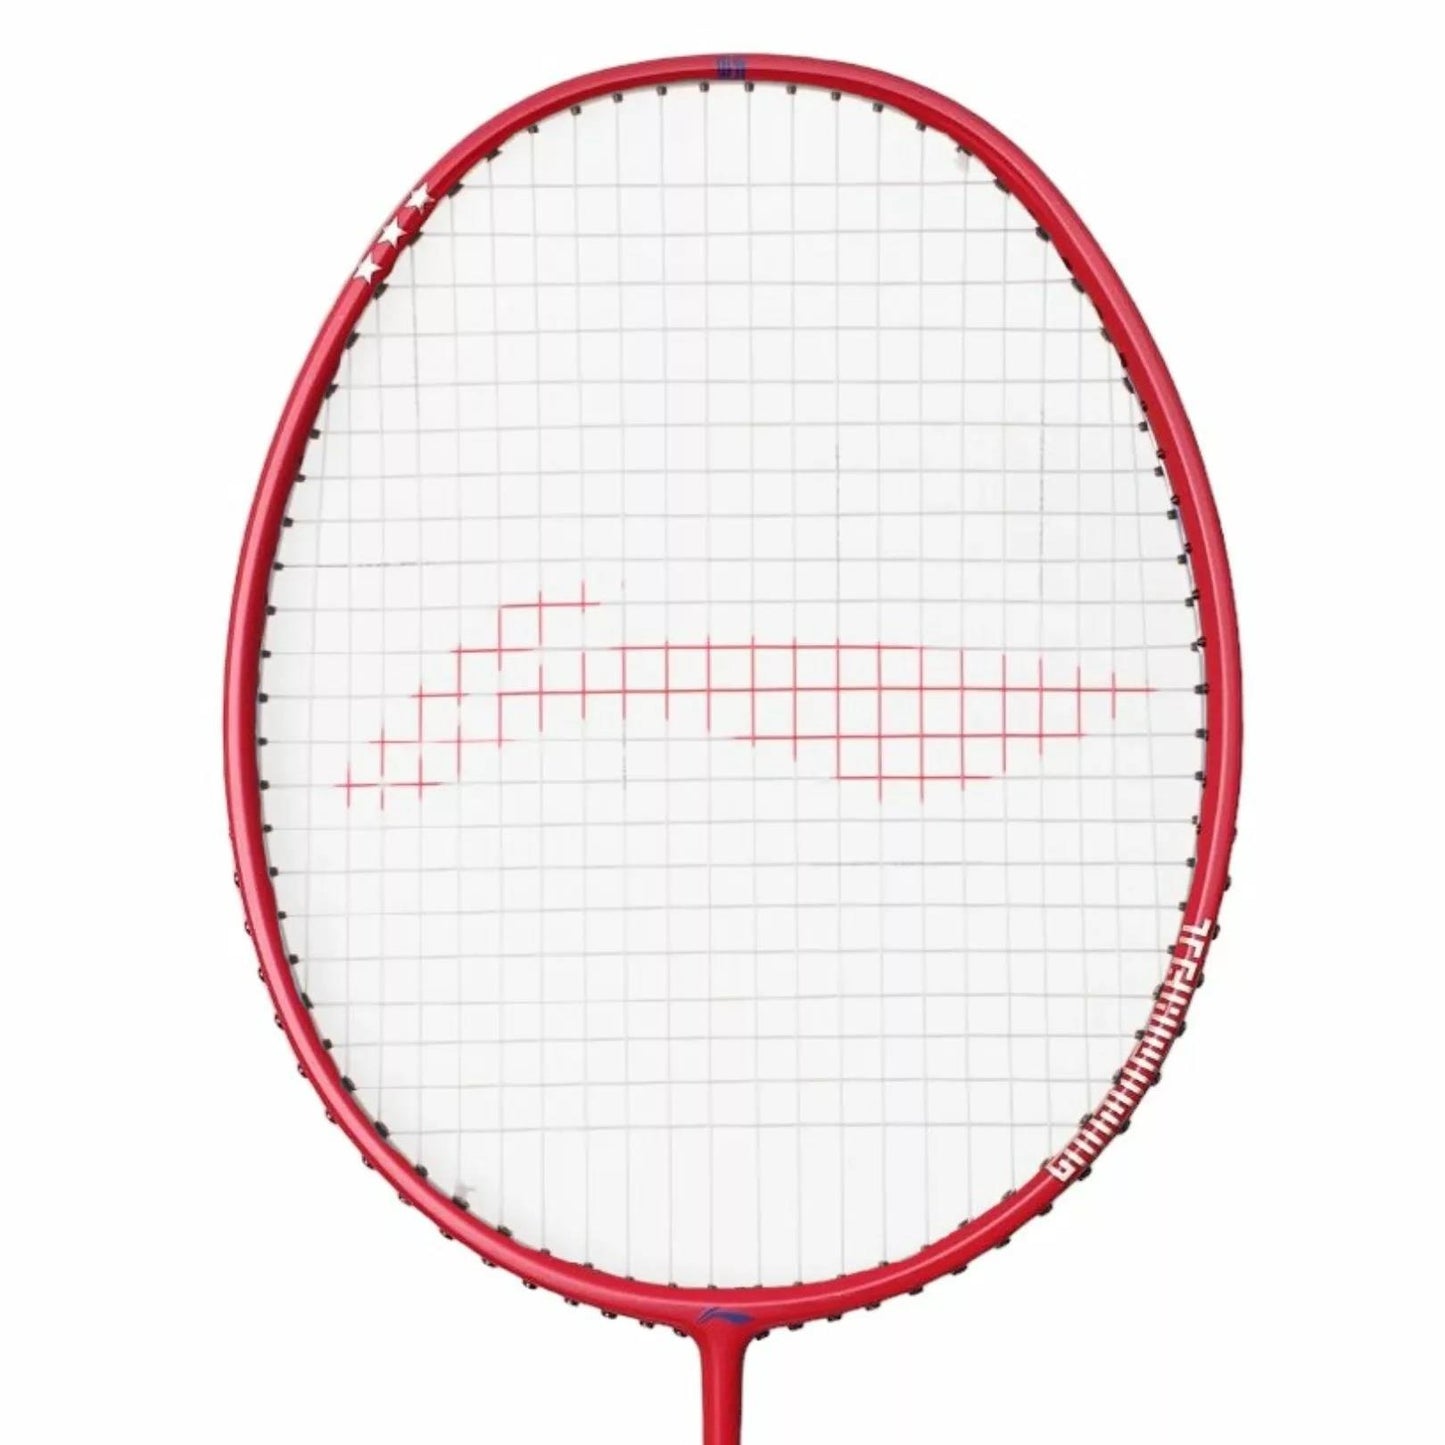 Li-Ning TR 120 Training Badminton Racket - Blue / Red - Head